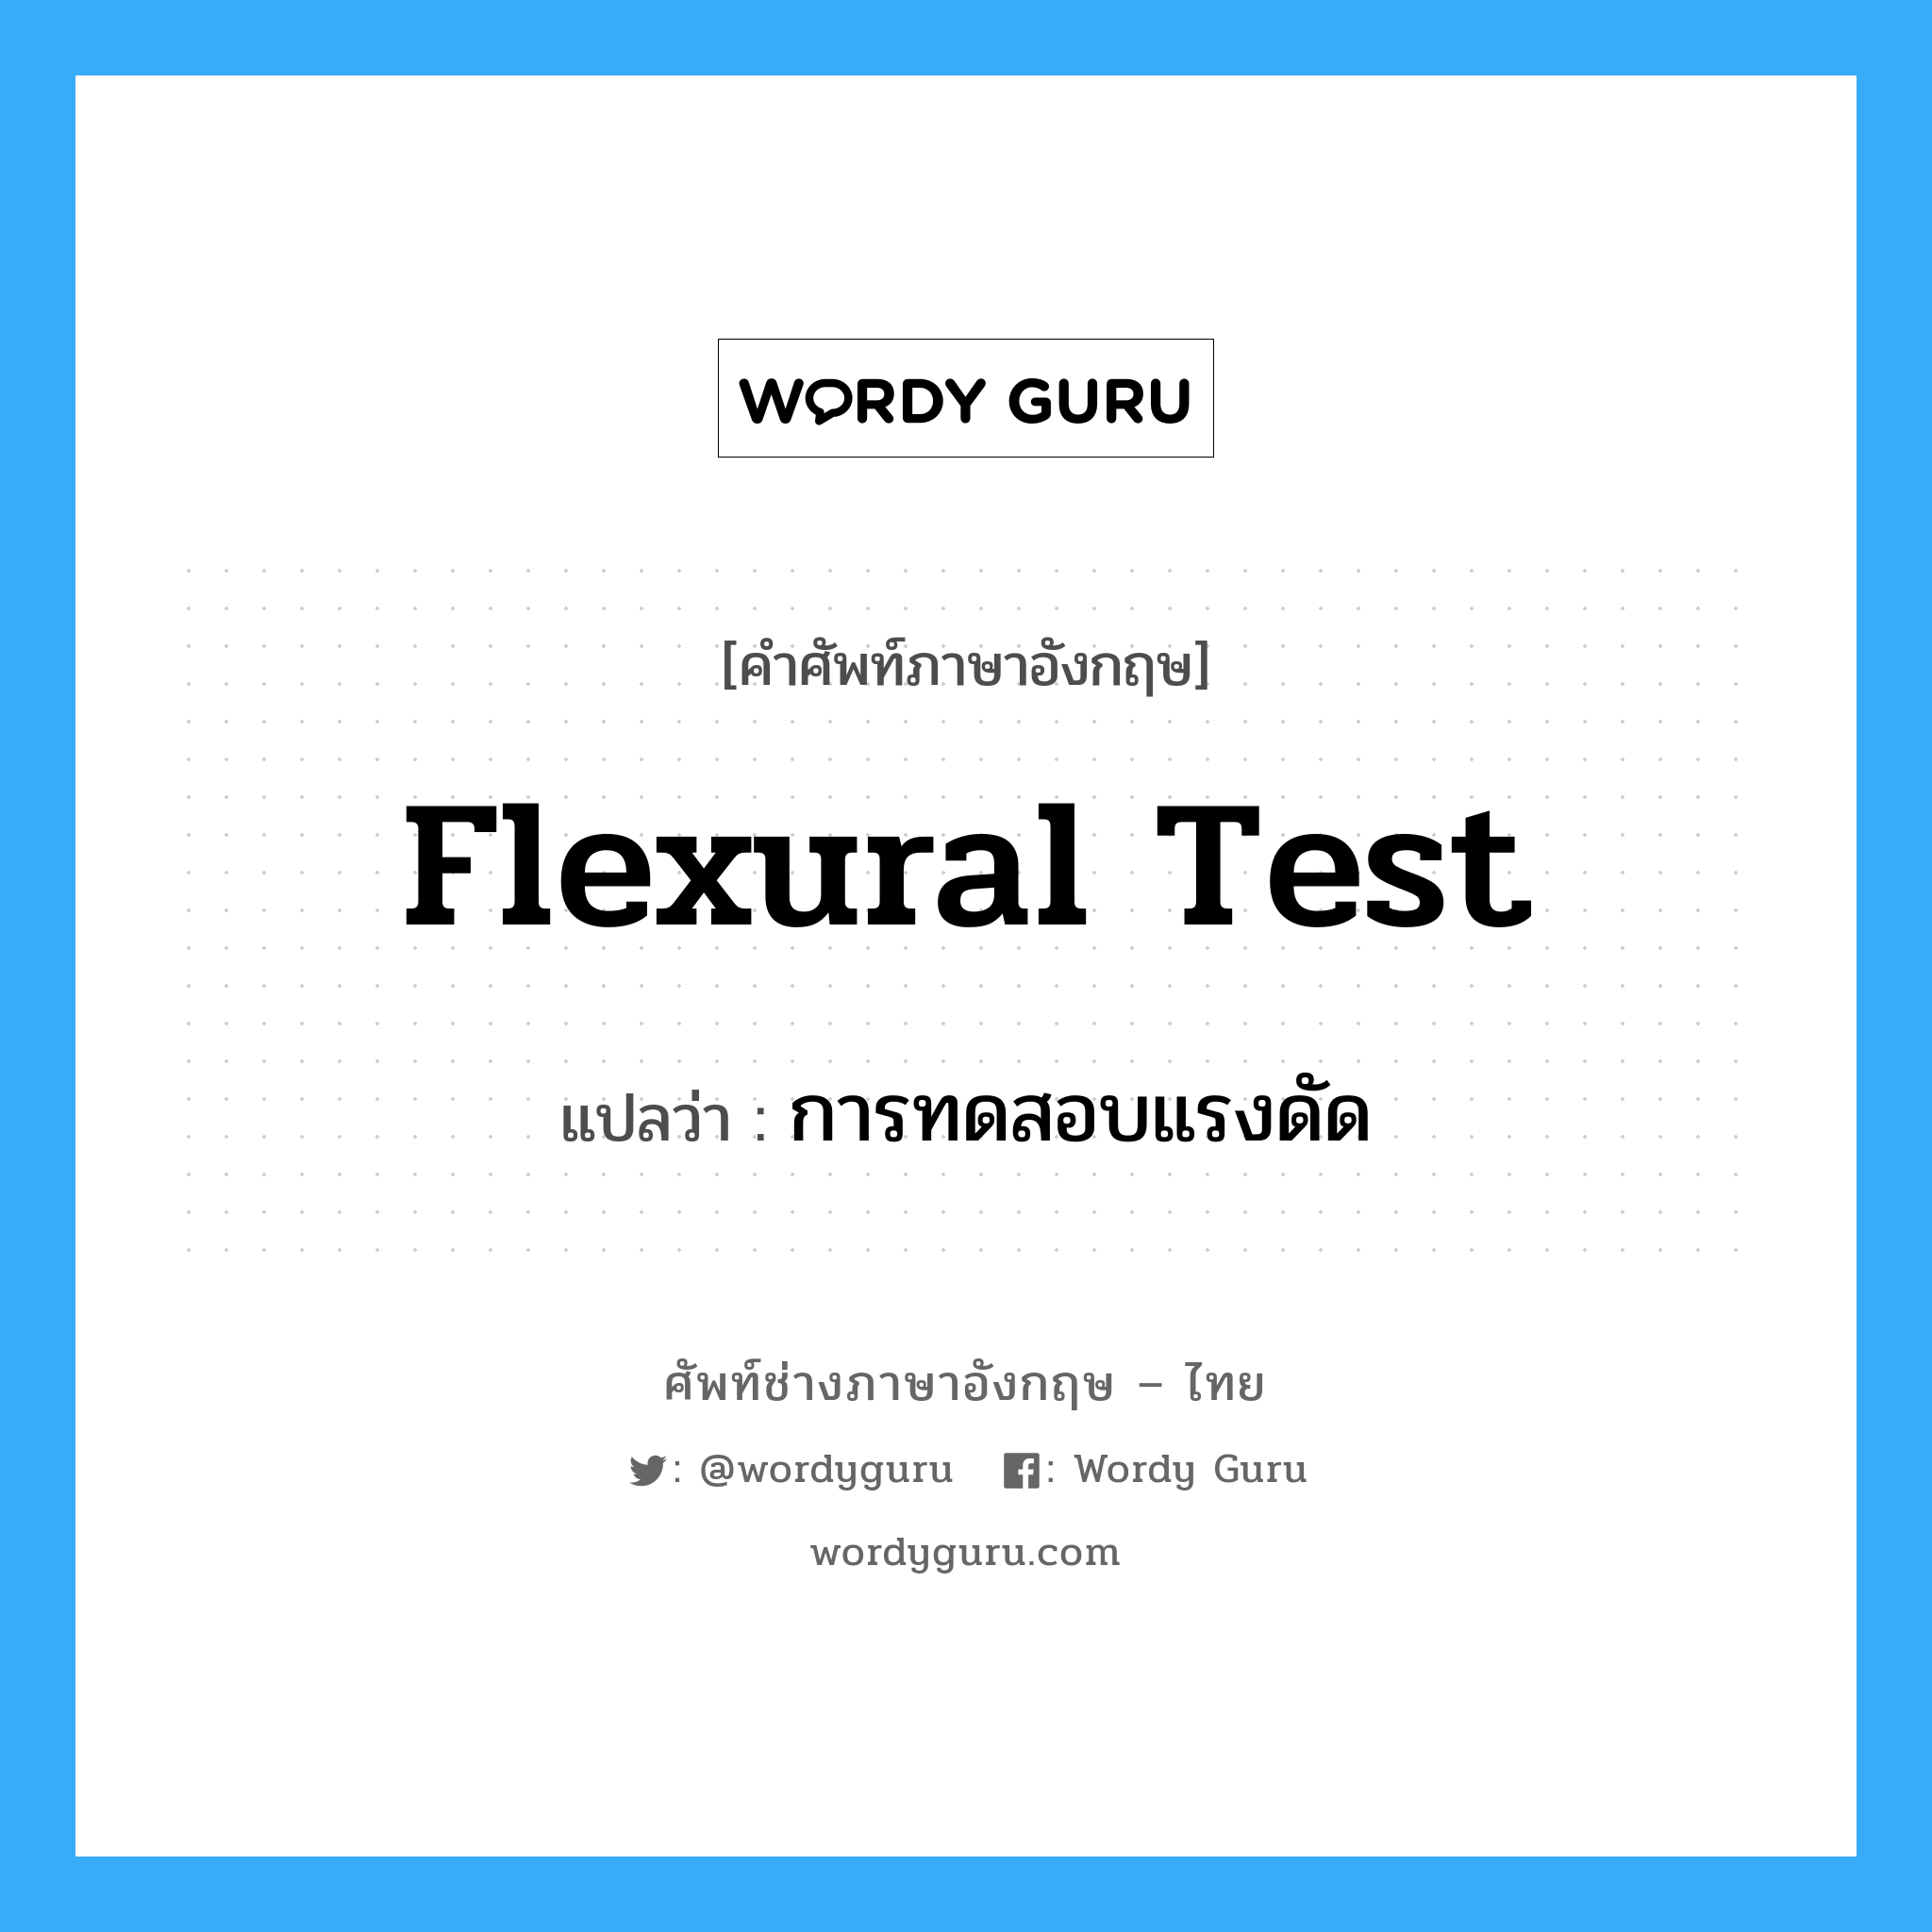 flexural test แปลว่า?, คำศัพท์ช่างภาษาอังกฤษ - ไทย flexural test คำศัพท์ภาษาอังกฤษ flexural test แปลว่า การทดสอบแรงดัด